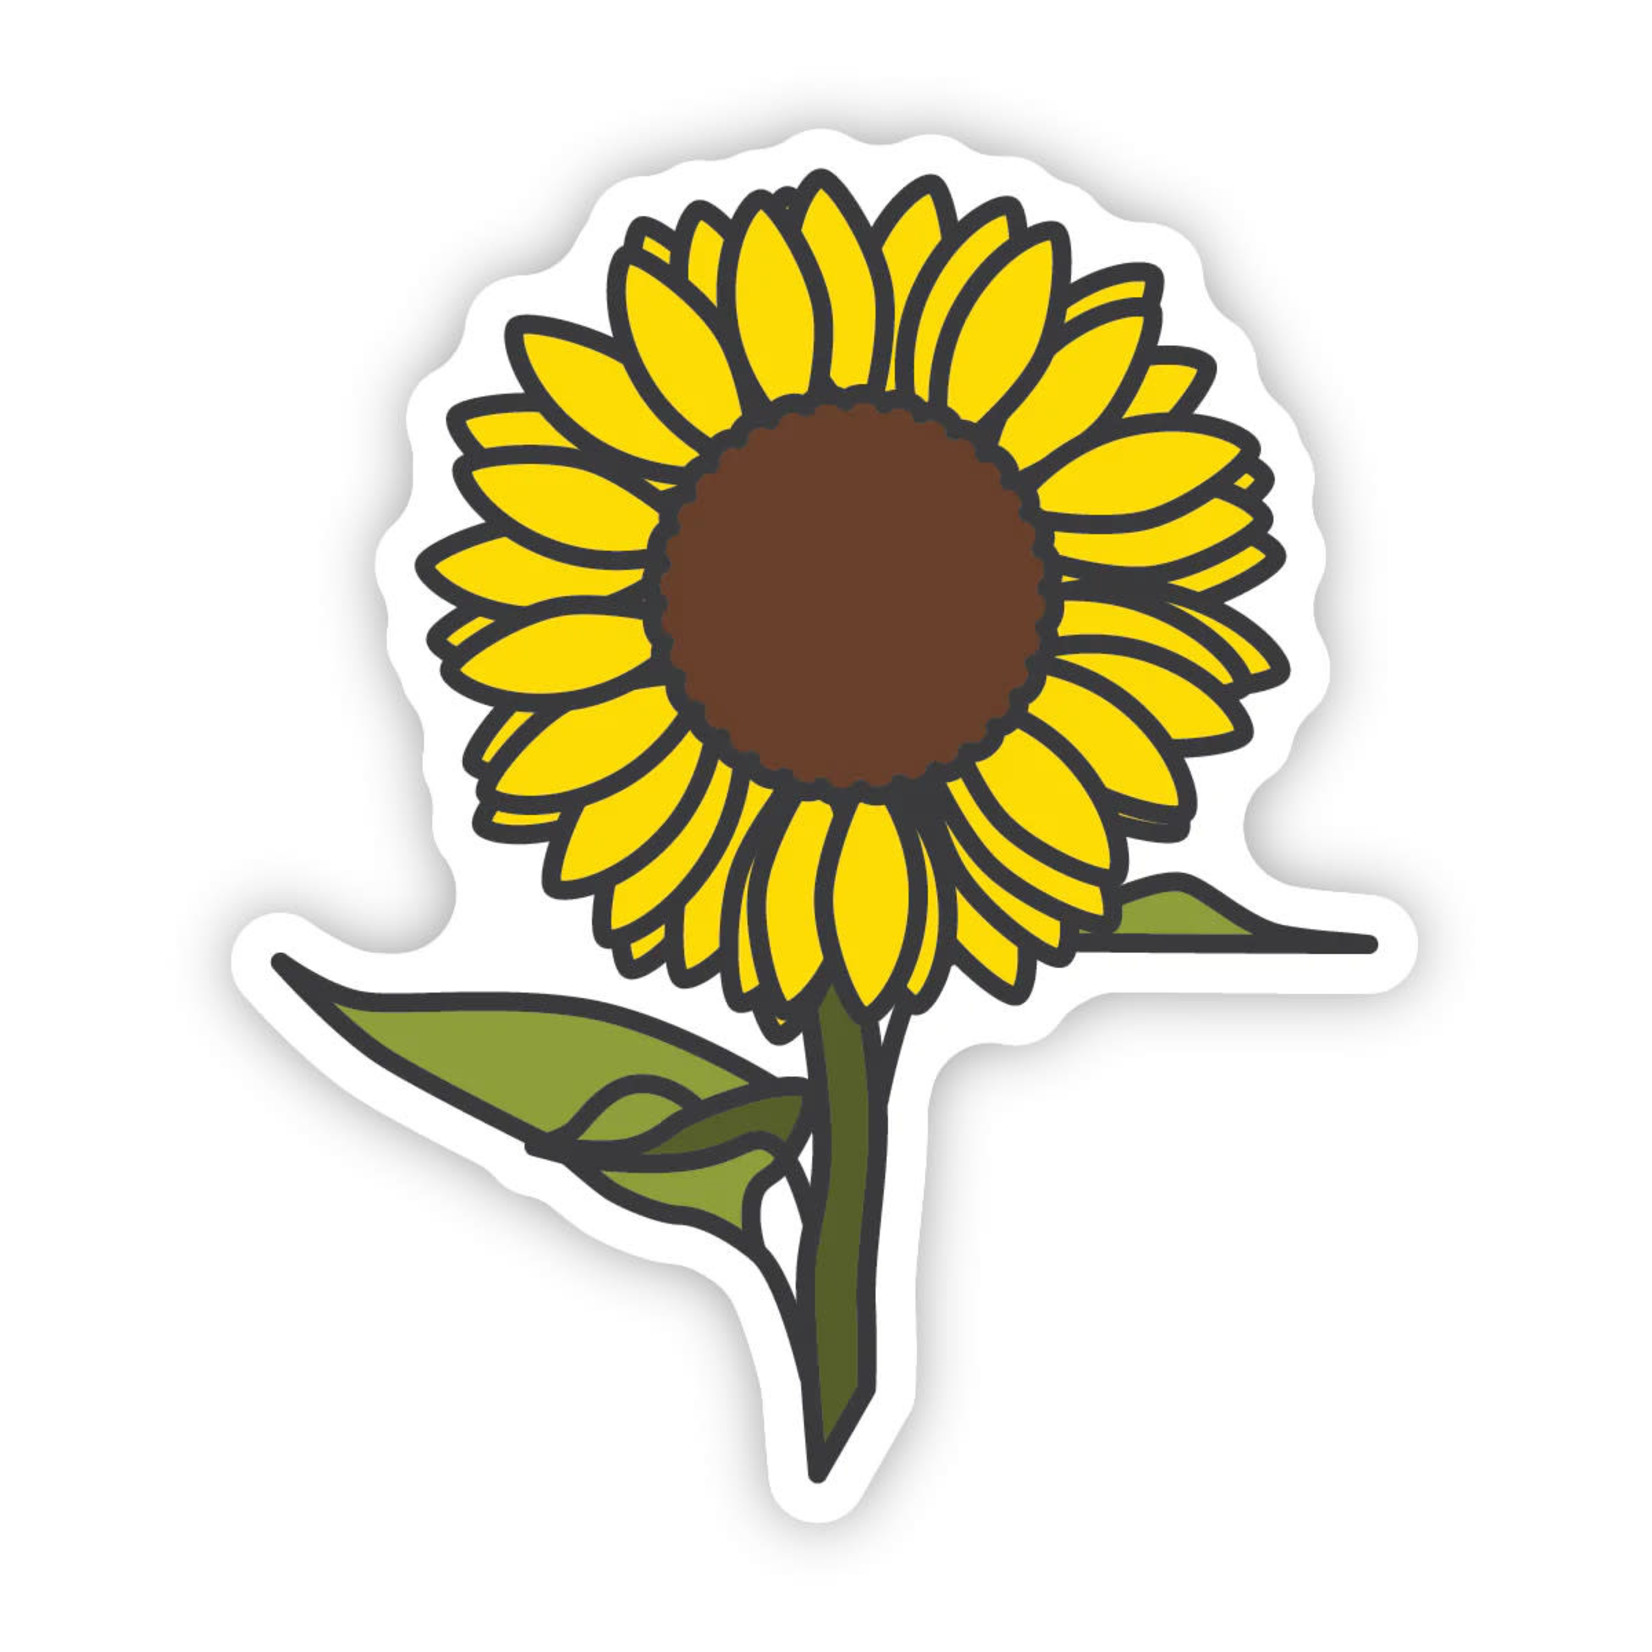 Stickers Northwest Sunflower Sticker